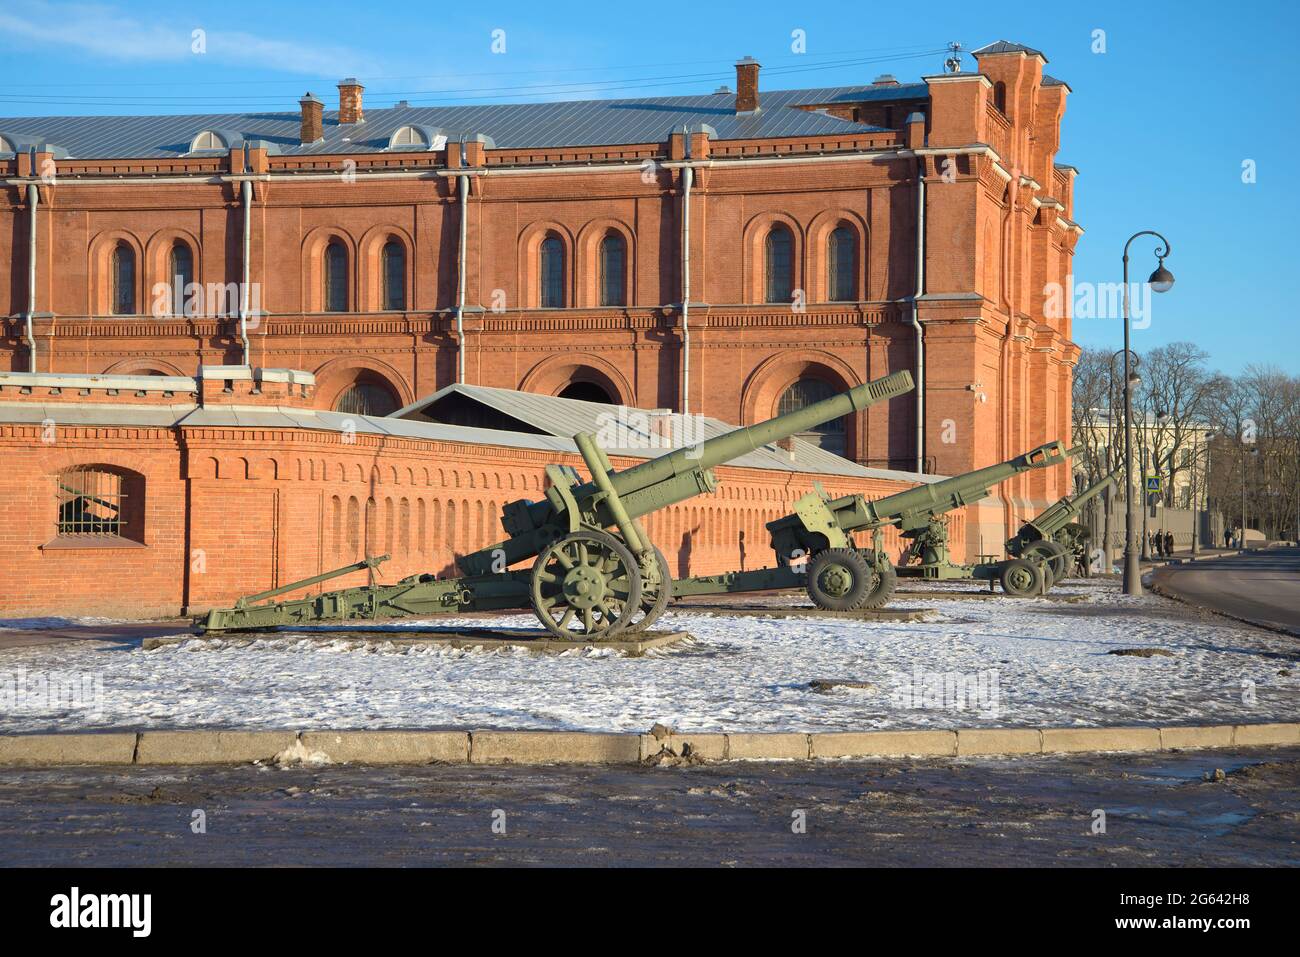 ST. PETERSBOURG, RUSSIE - 20 JANVIER 2017 : pièces d'artillerie de l'époque Grande Guerre patriotique aux murs du musée de l'Artillerie dans l'après-midi de janvier Banque D'Images